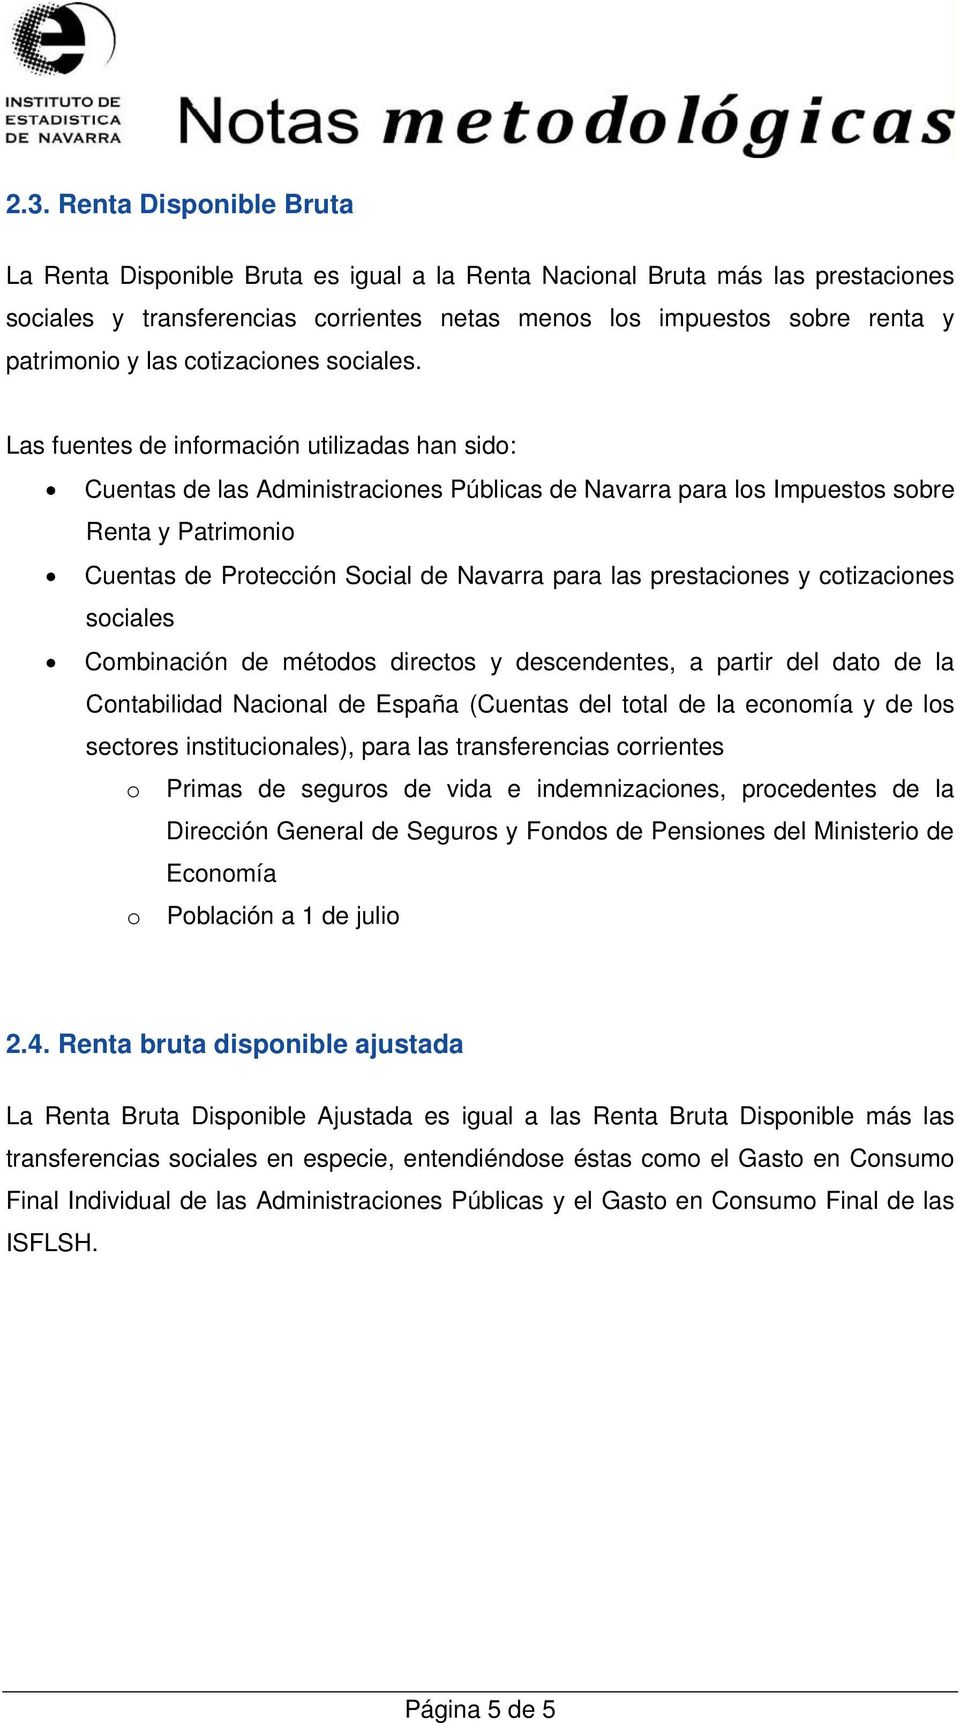 Las fuentes de información utilizadas han sido: Cuentas de las Administraciones Públicas de Navarra para los Impuestos sobre Renta y Patrimonio Cuentas de Protección Social de Navarra para las